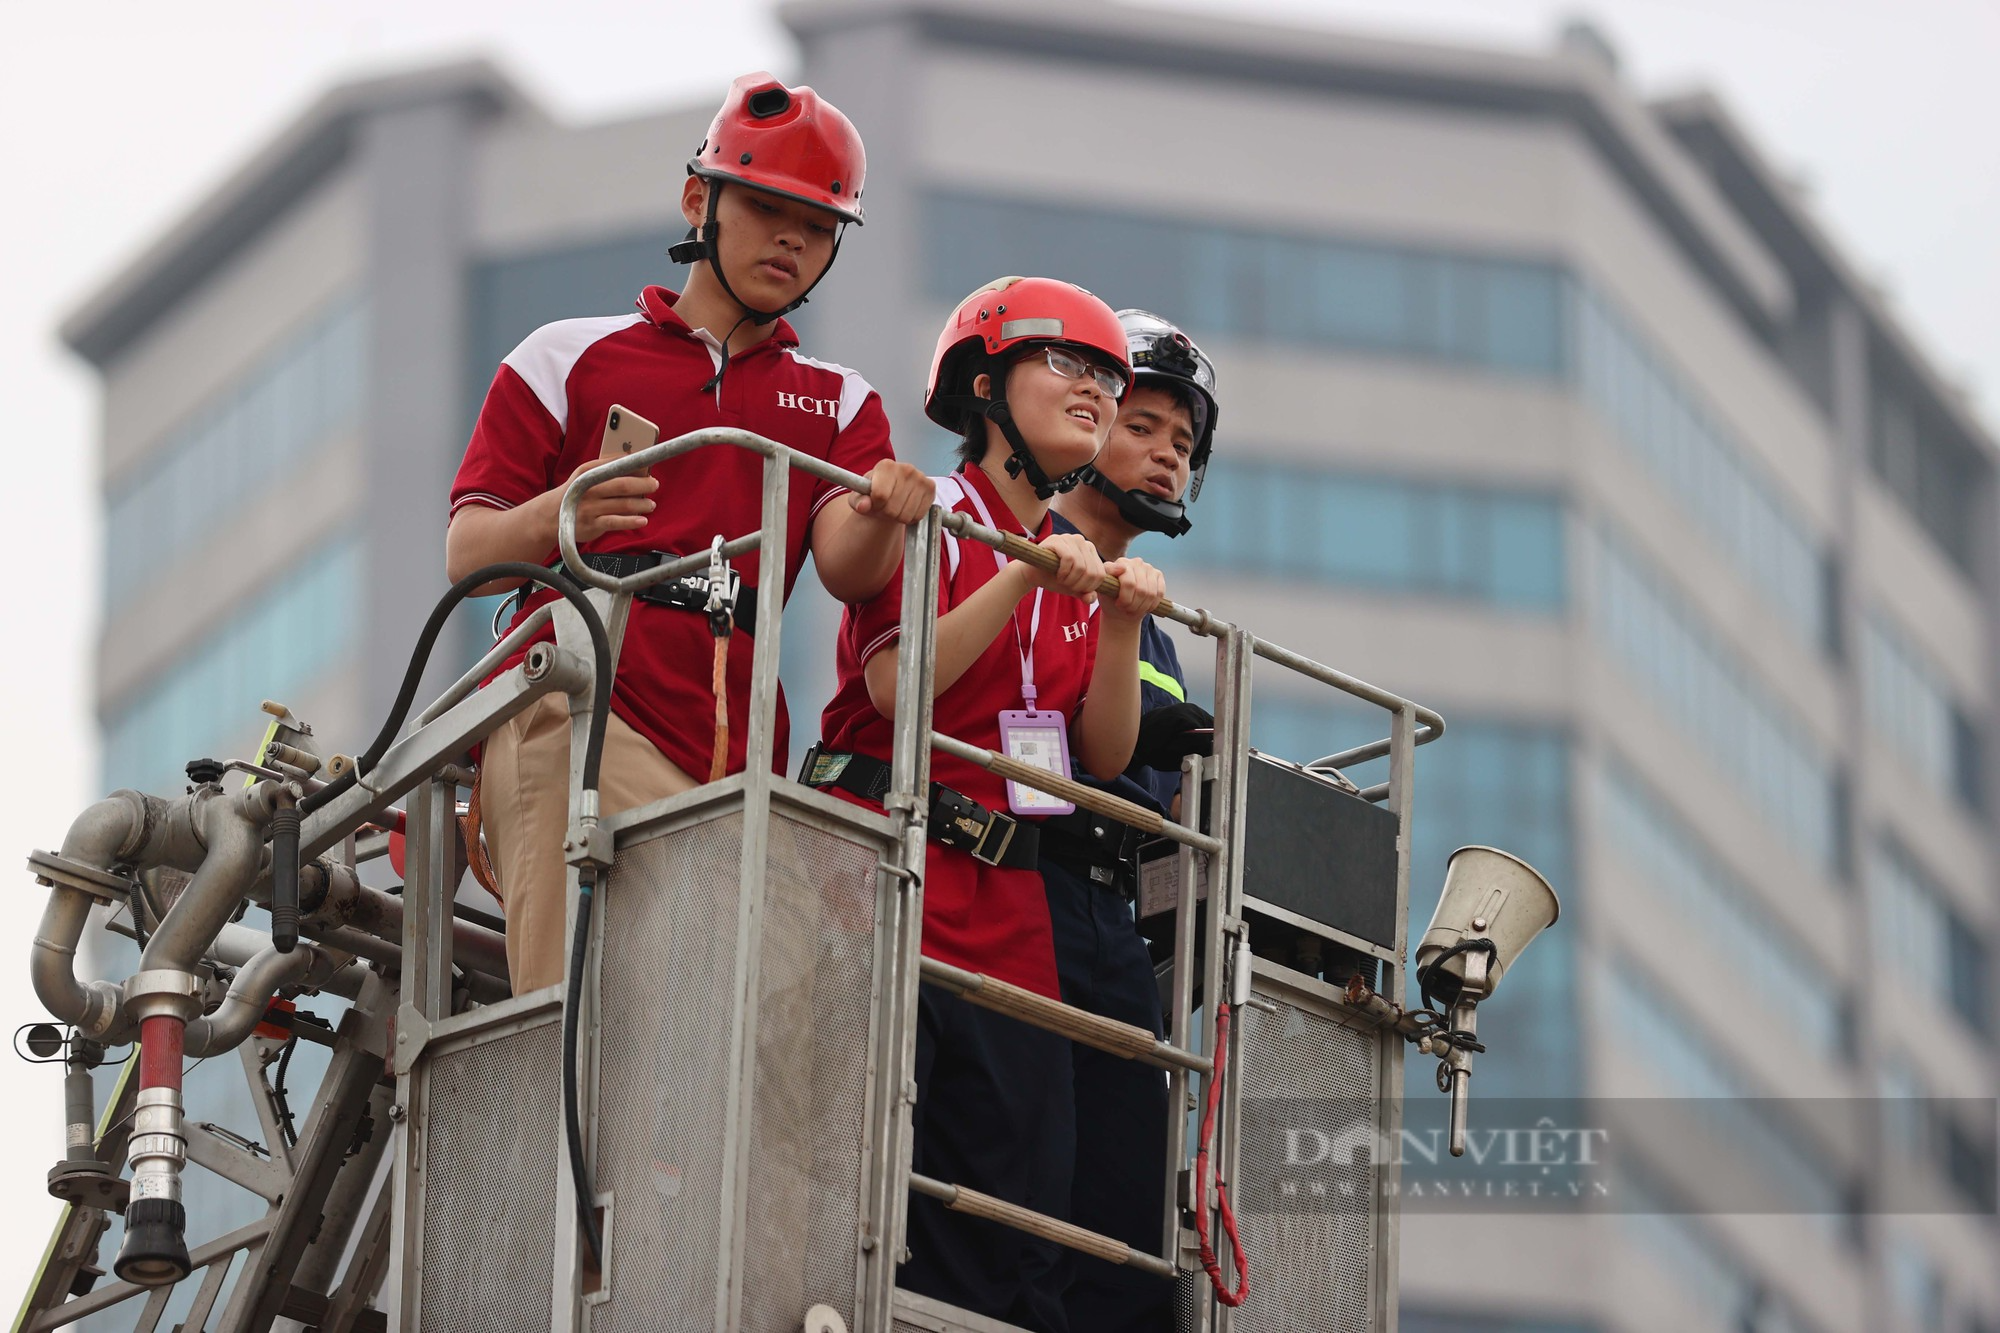 Trẻ em Hà Nội hào hứng dập lửa, thử đu dây và lên xe thang cứu hỏa cao hàng chục mét - Ảnh 10.